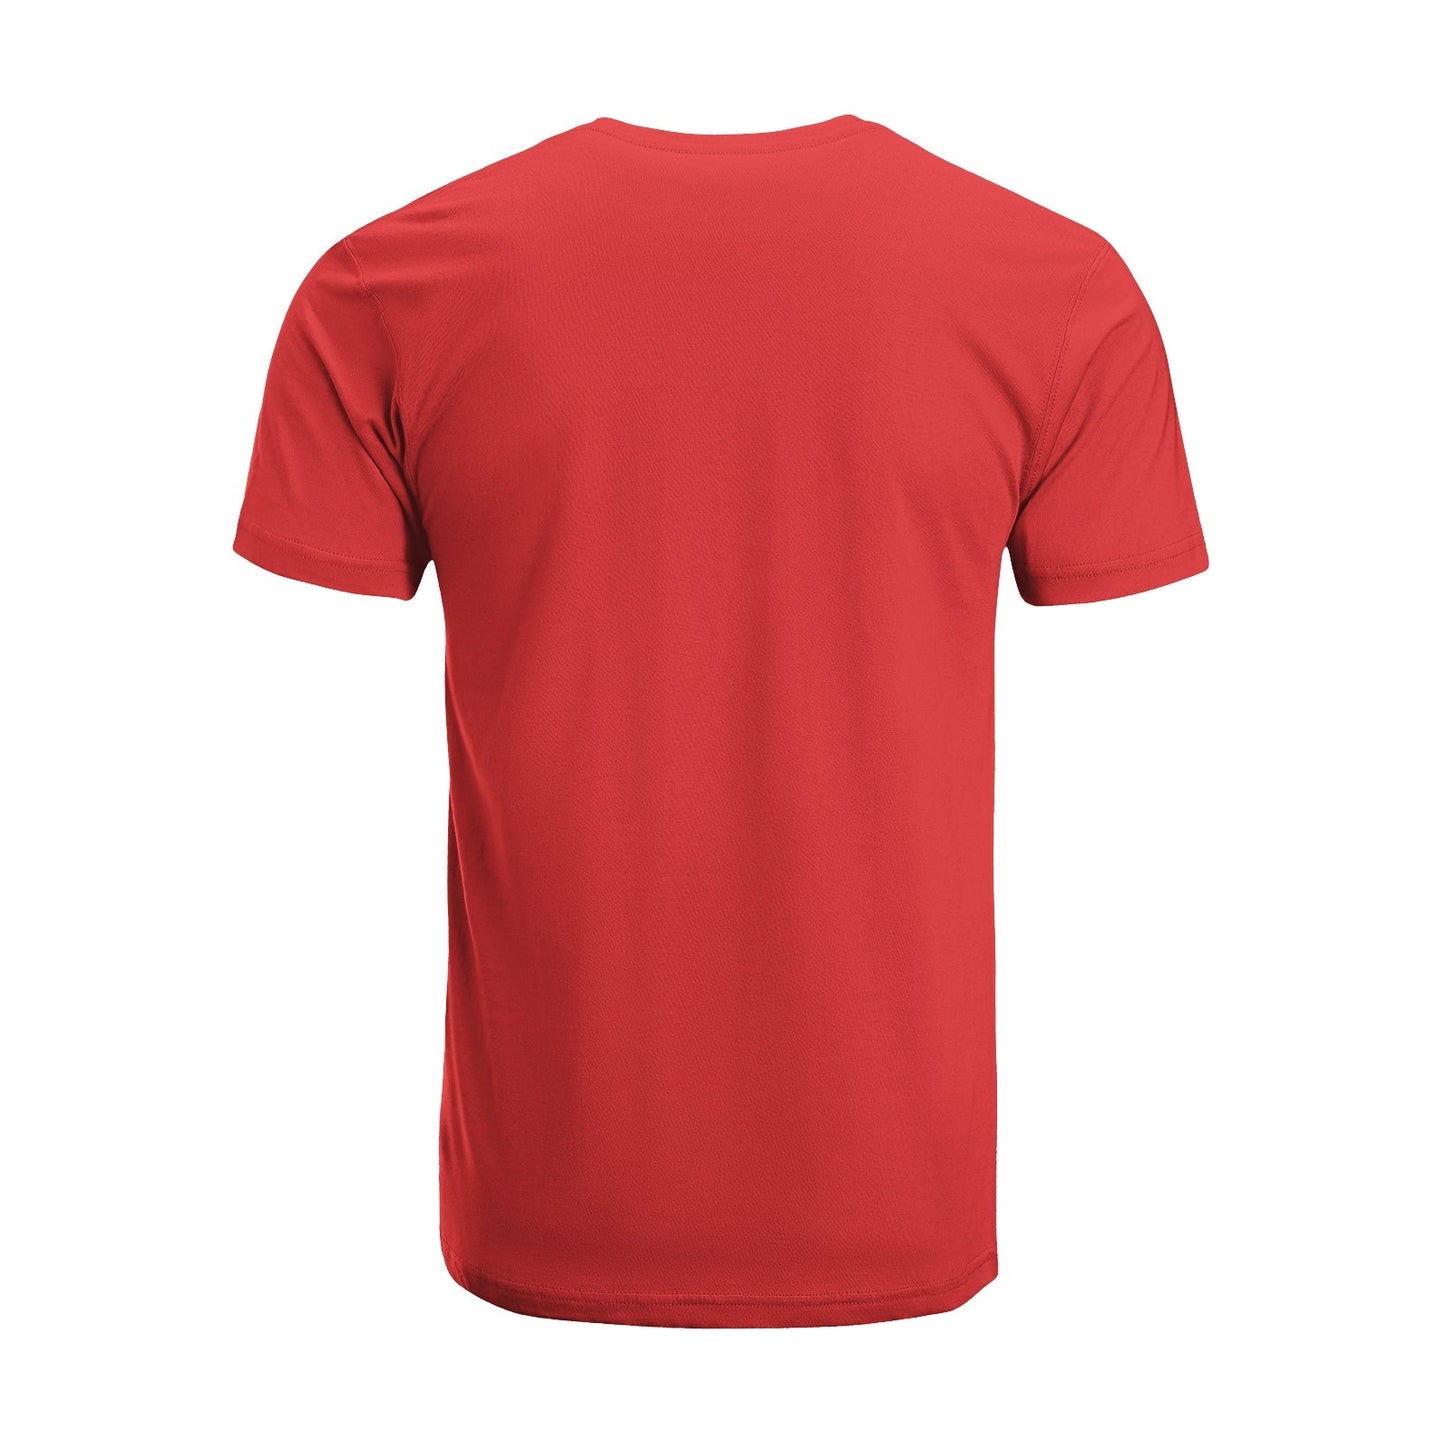 Unisex Short Sleeve Crew Neck Cotton Jersey T-Shirt TRUCK 41